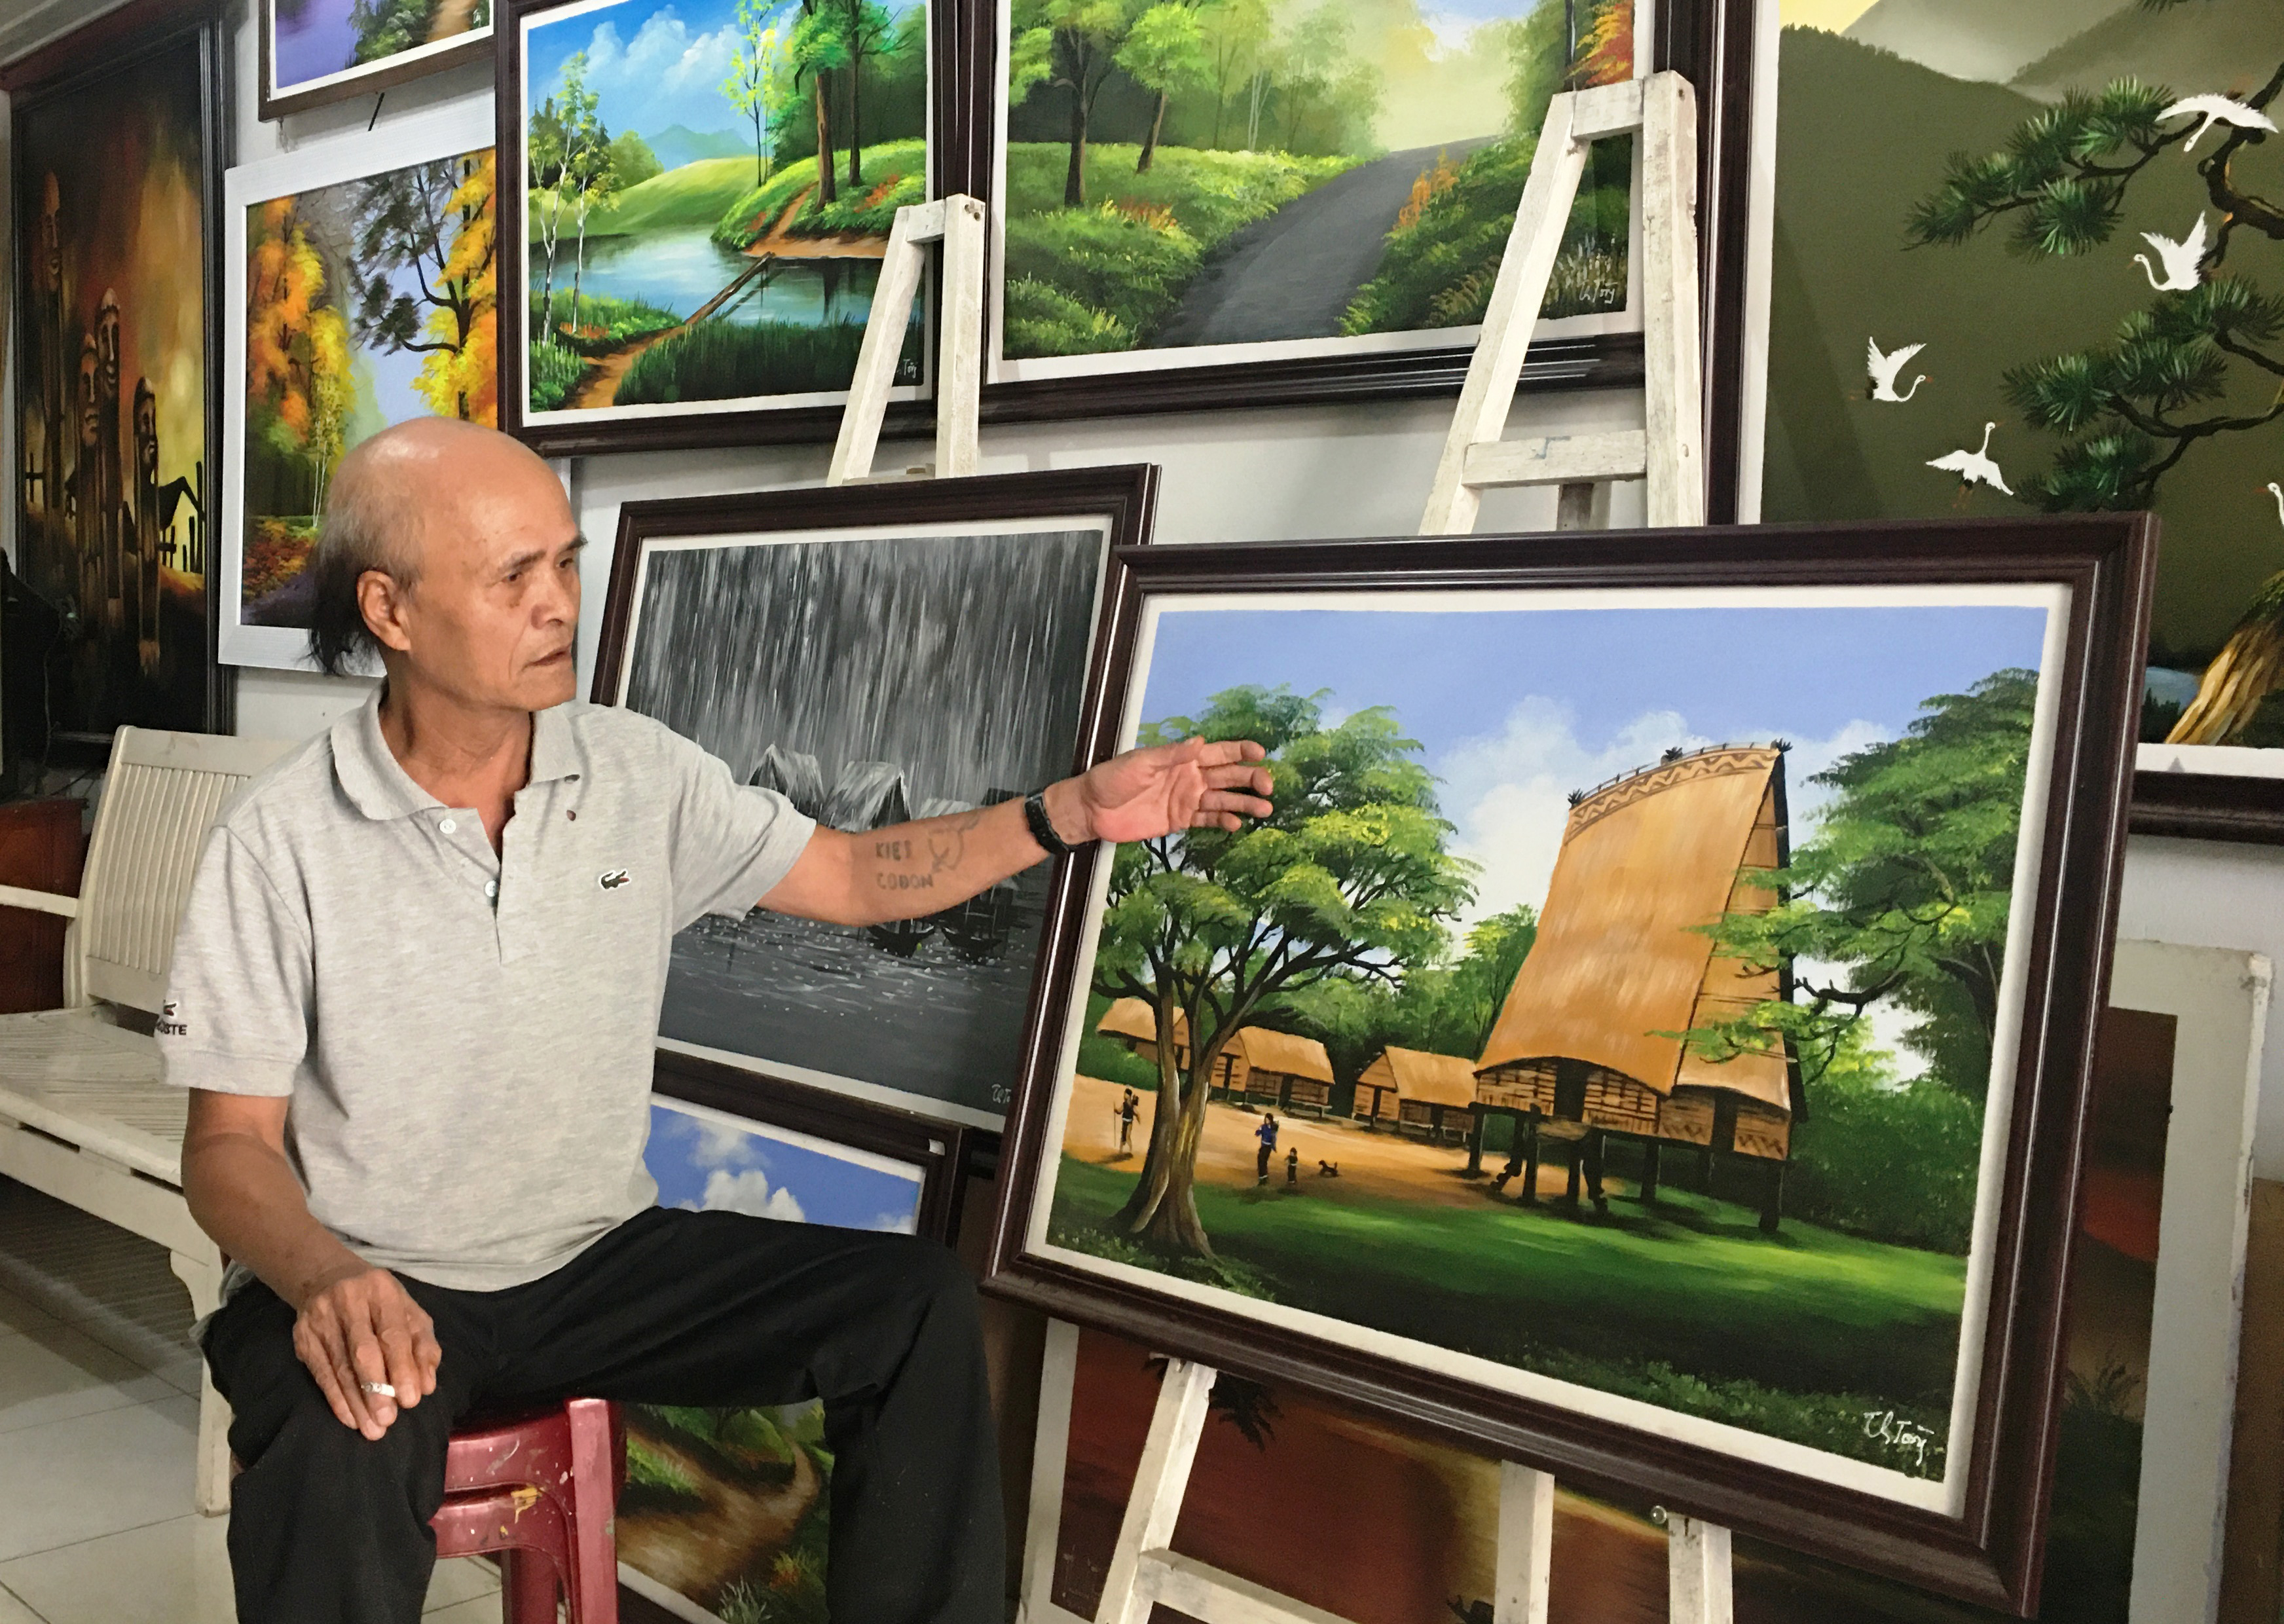 Họa sĩ Nguyễn Thanh Tòng là một tài năng nổi tiếng trong ngành nghệ thuật của Việt Nam. Với phong cách vẽ chân thật và sắc nét, các tác phẩm của ông mang đậm nét độc đáo và ấn tượng.